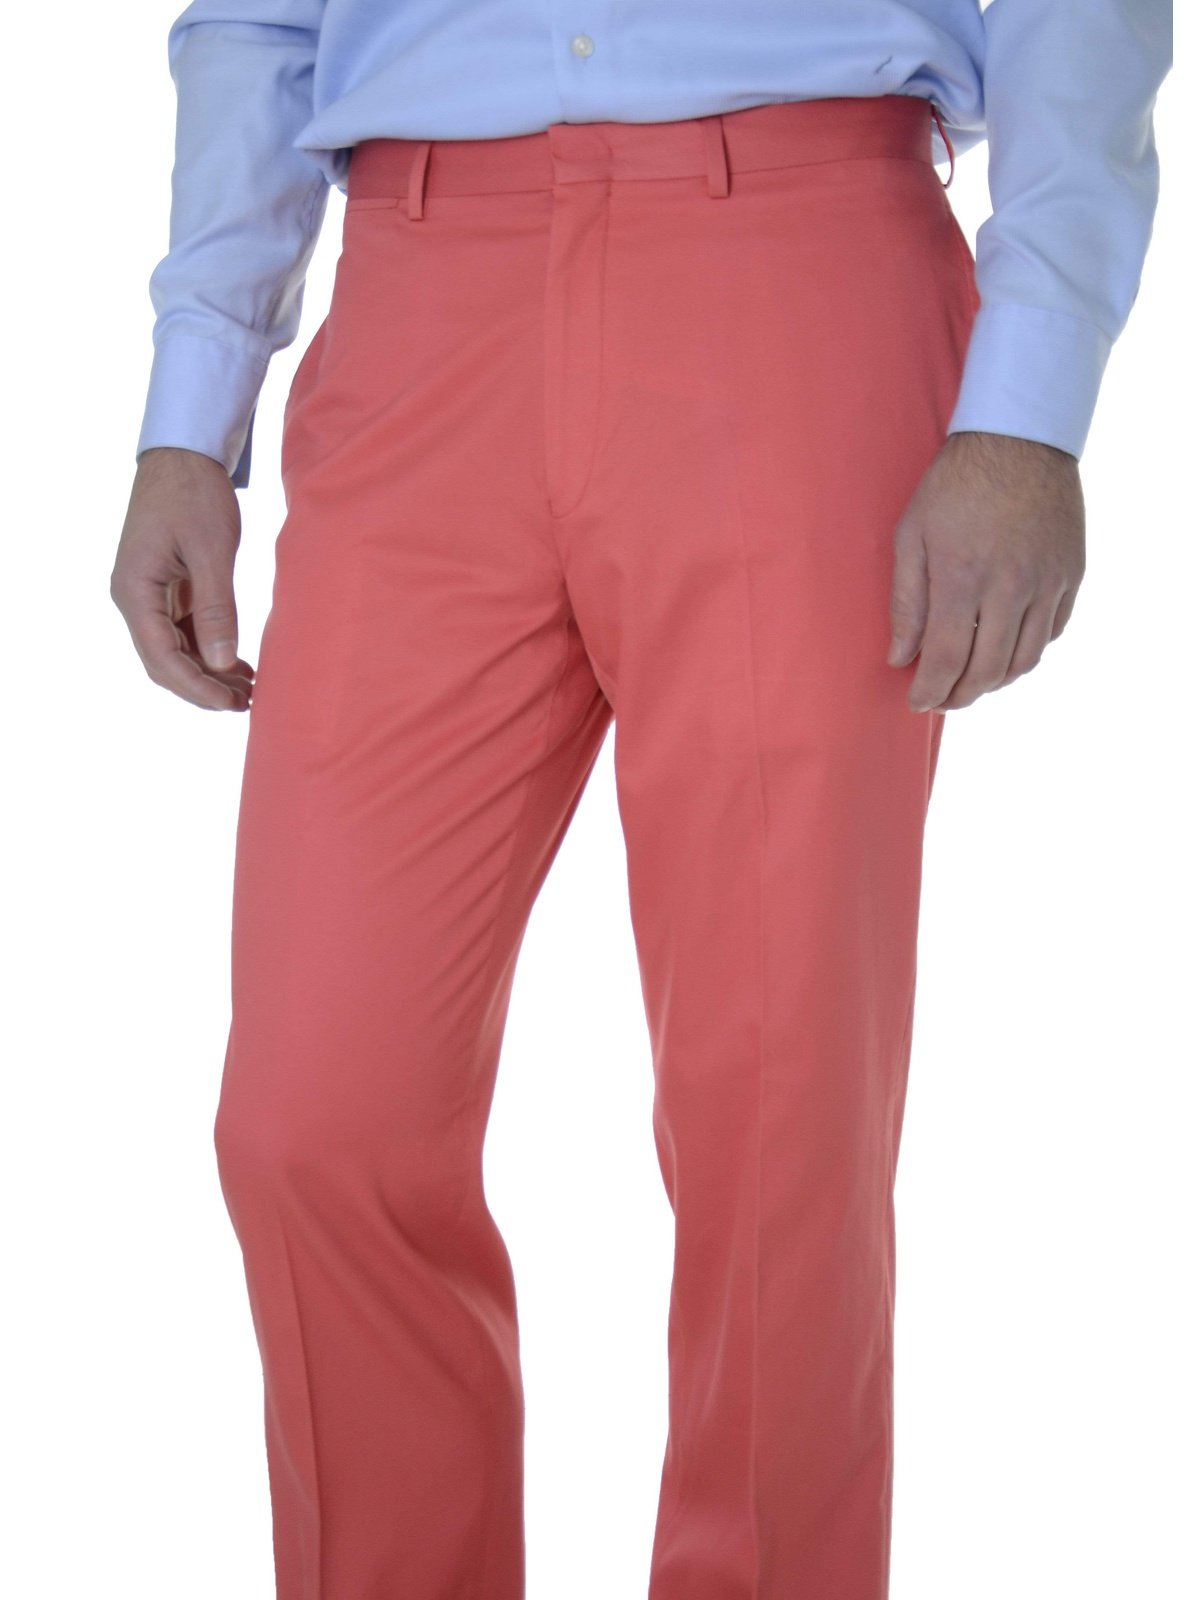 Ralph Lauren Sale Pants 33X30 Lauren Ralph Lauren Trim Fit Solid Melon Red Flat Front Cotton Dress Pants